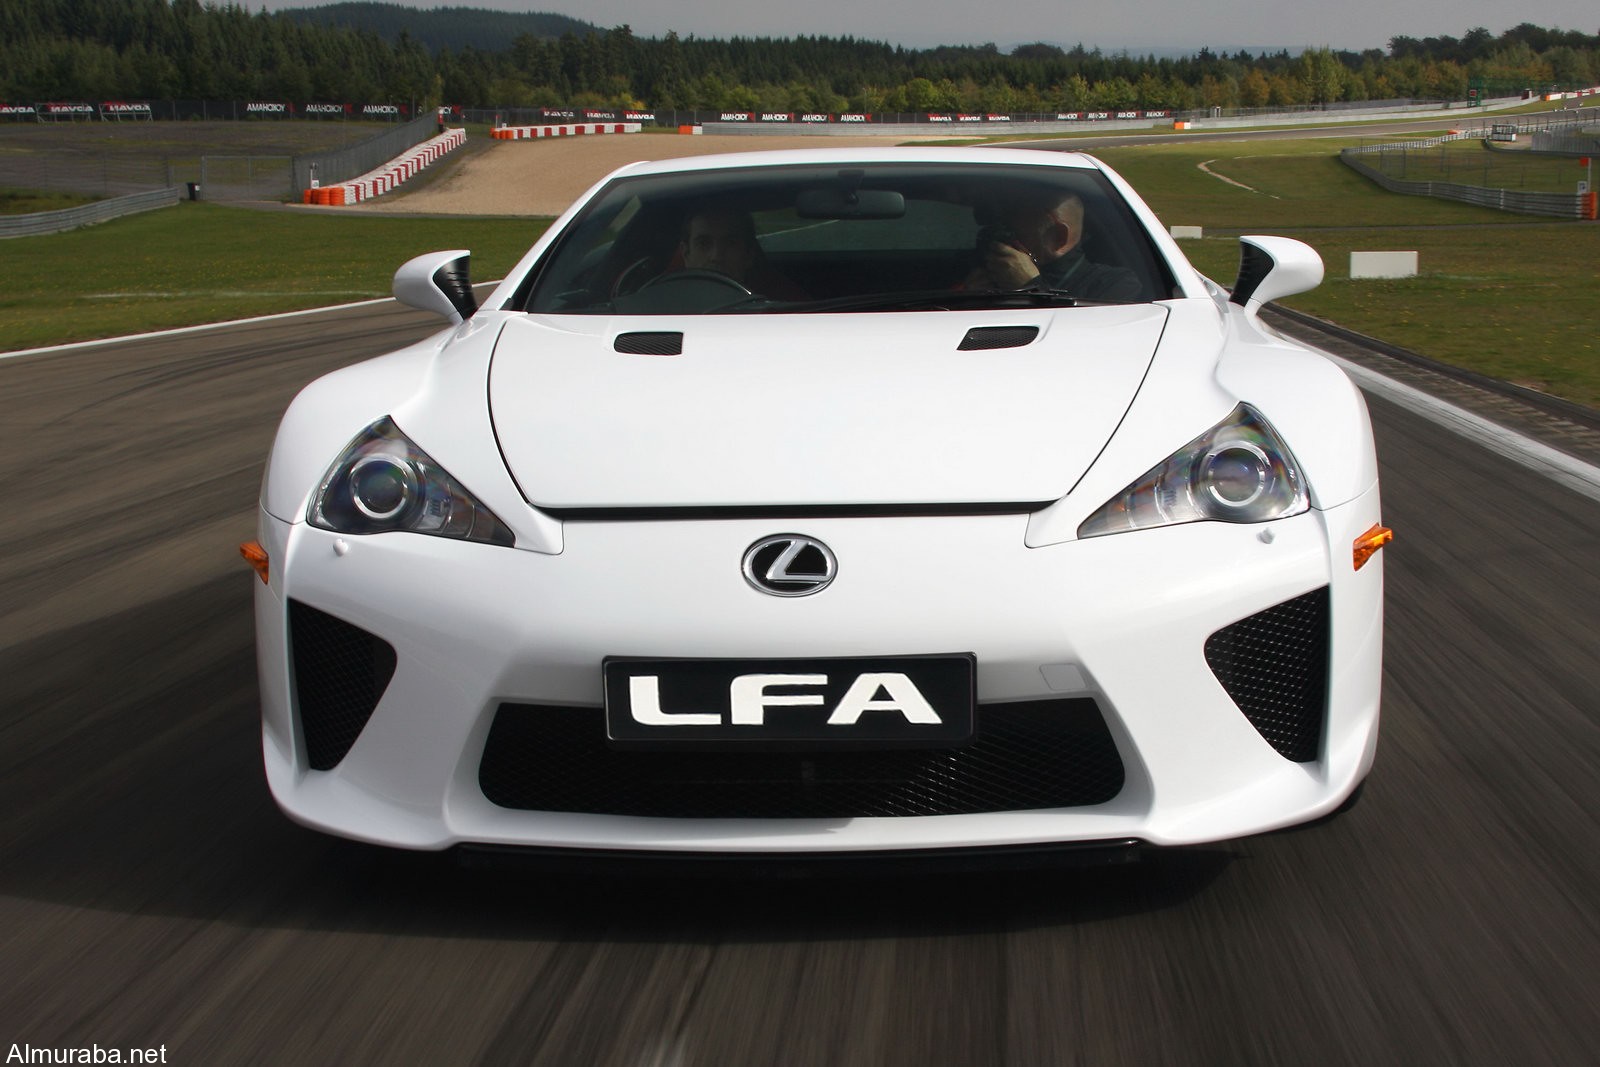 "لكزس" لا تنتوي تصنيع طراز جديد من سيارتها لكزس LFA الرياضية الخارقة Lexus 3